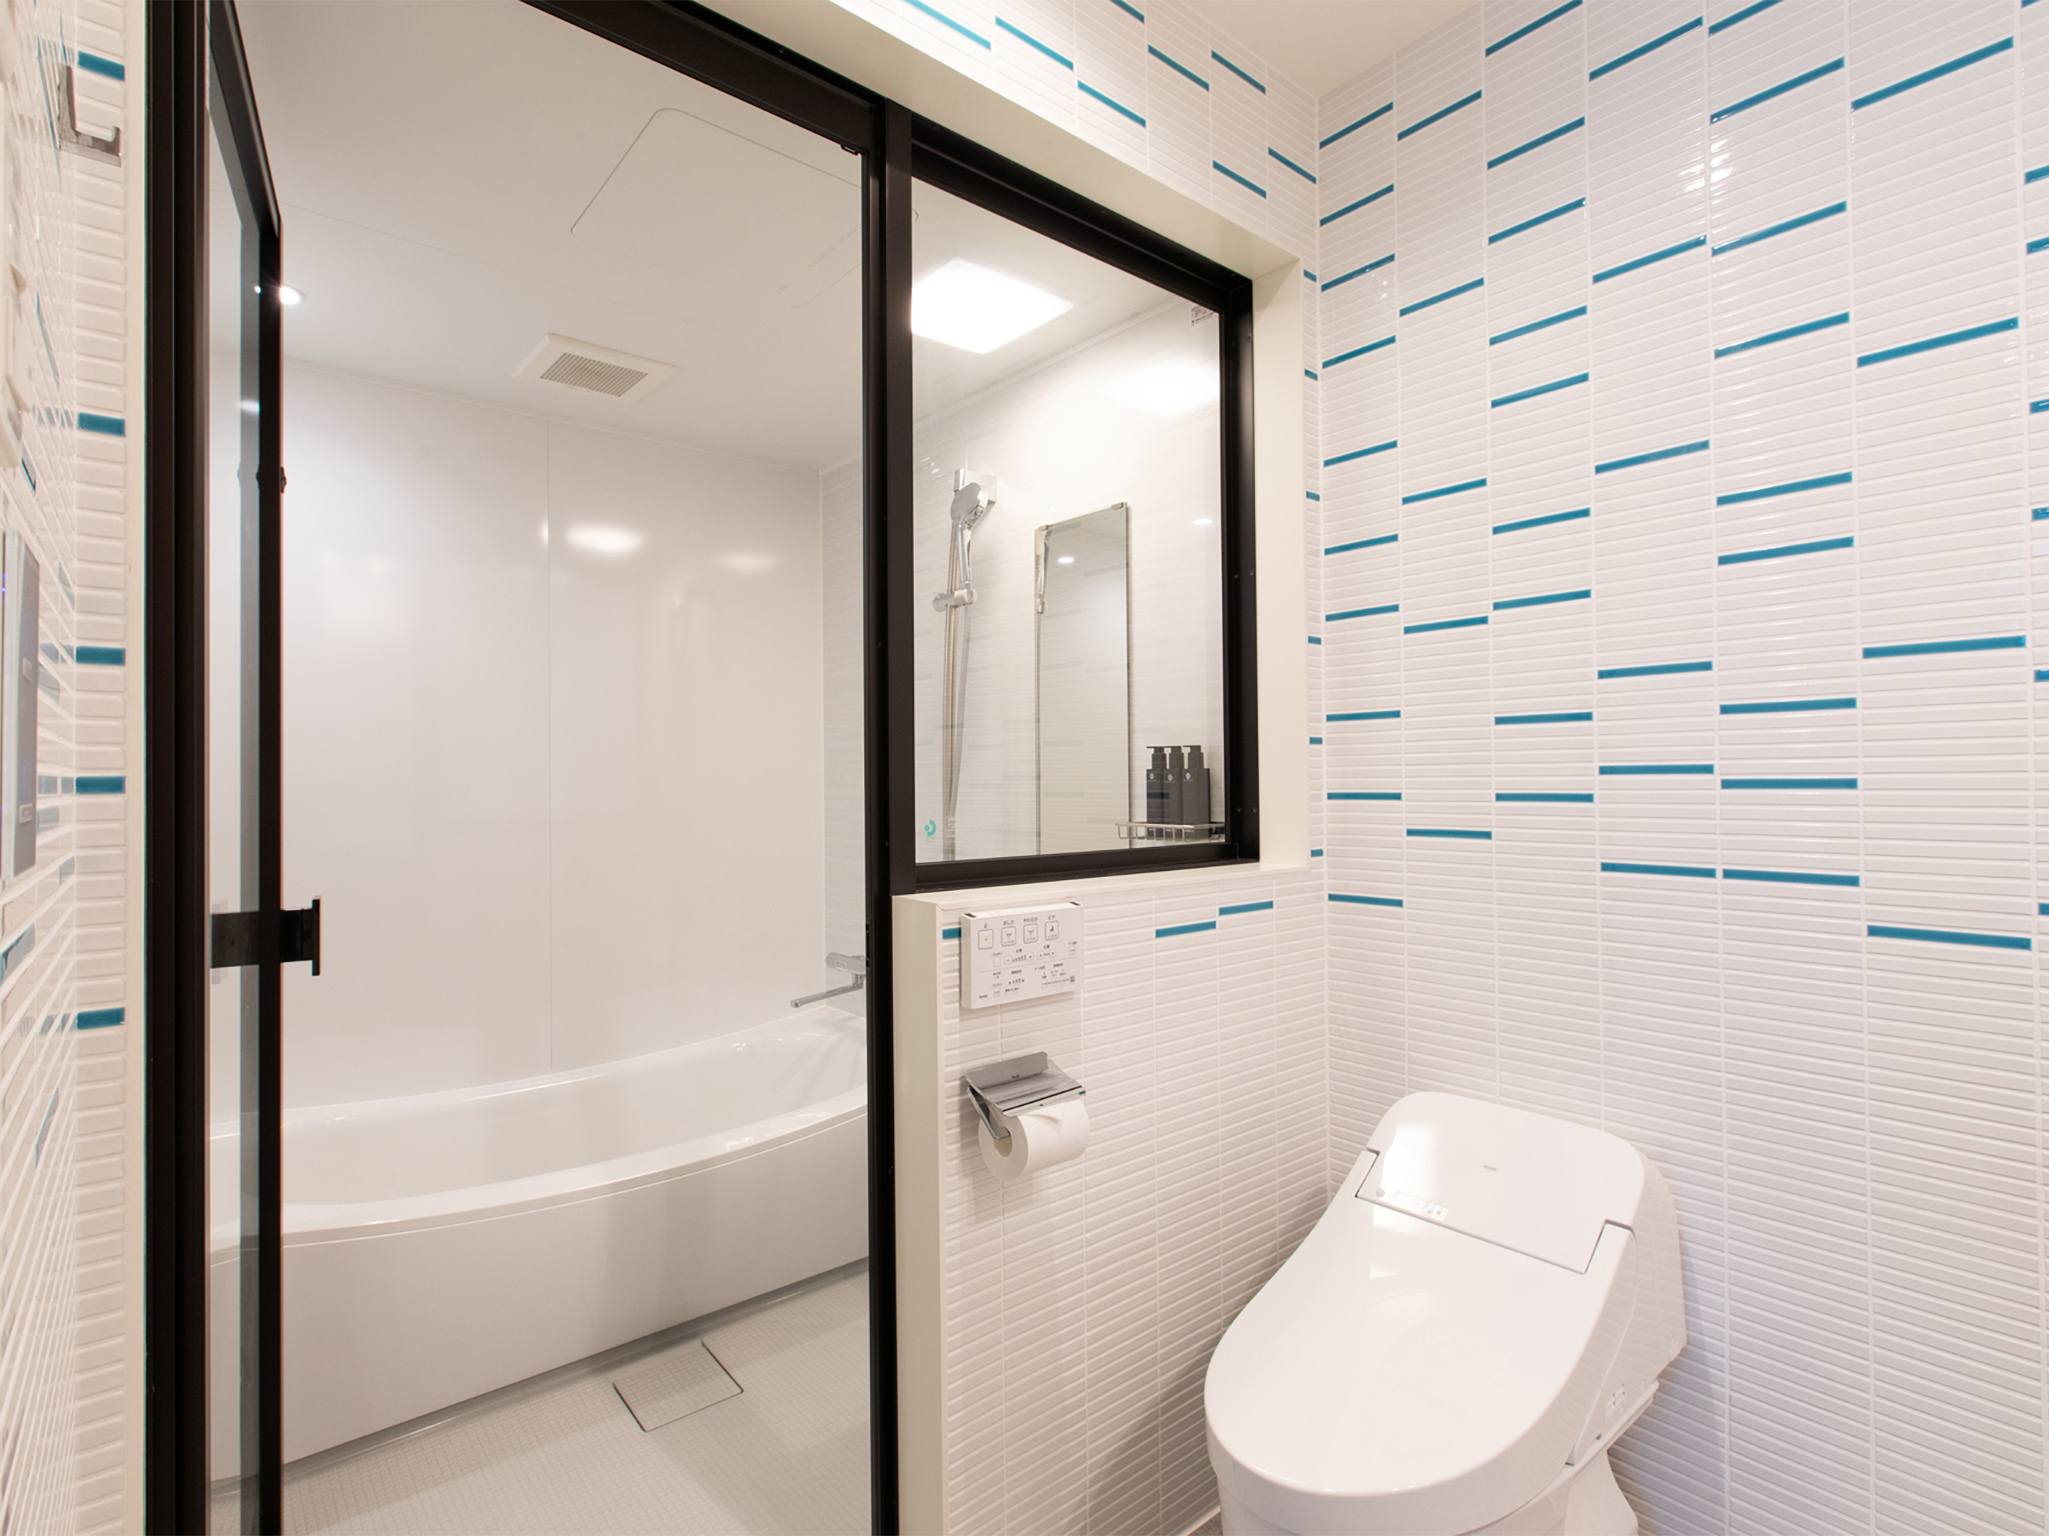 Olaf House - Bathroom amenities